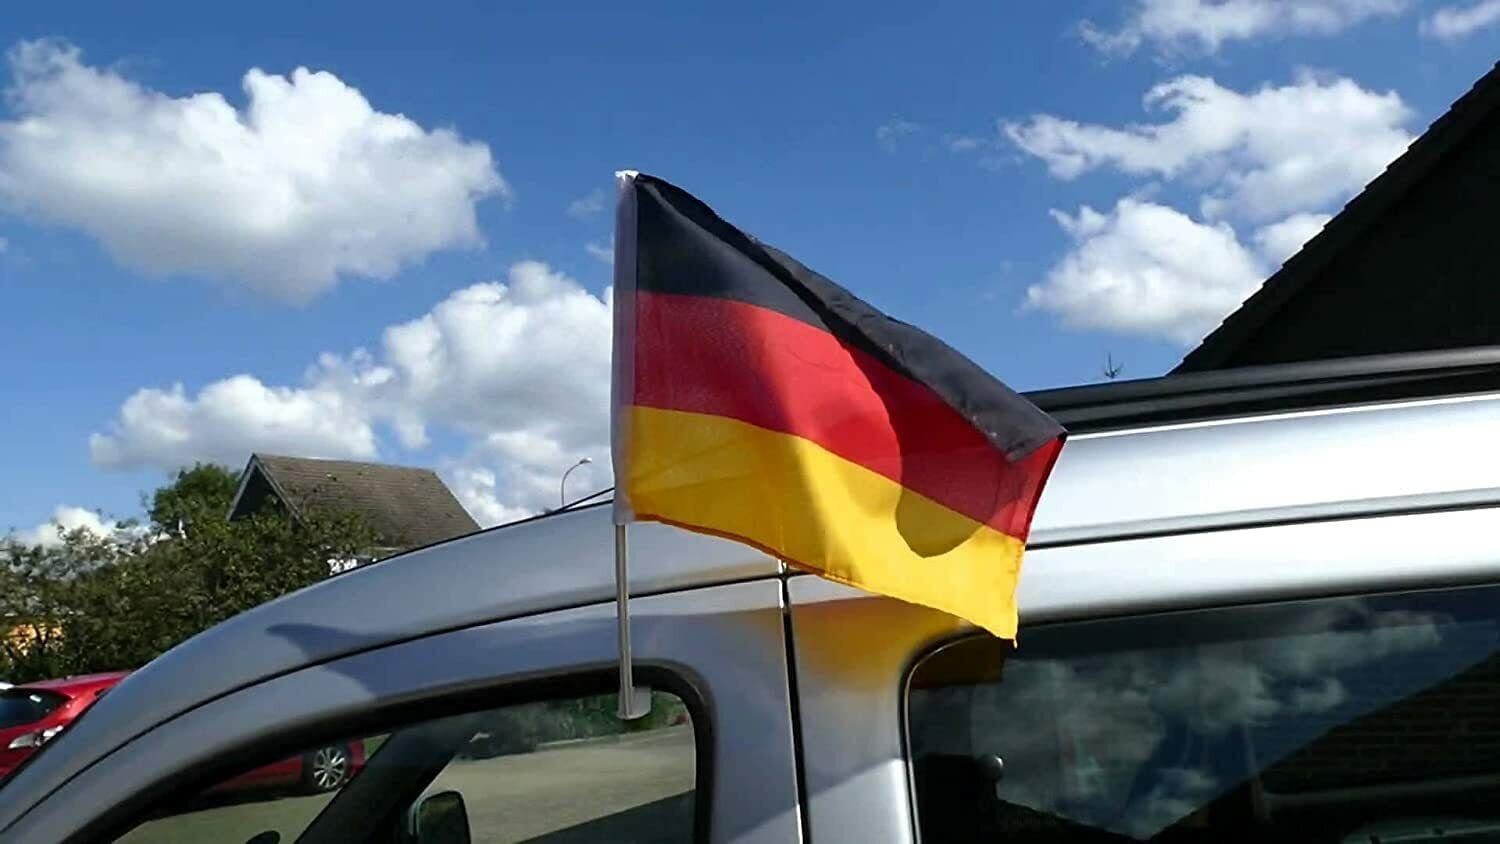 Deutschland Auto Spiegelflagge Fanartikel Weltmeisterschaft WM EM (2